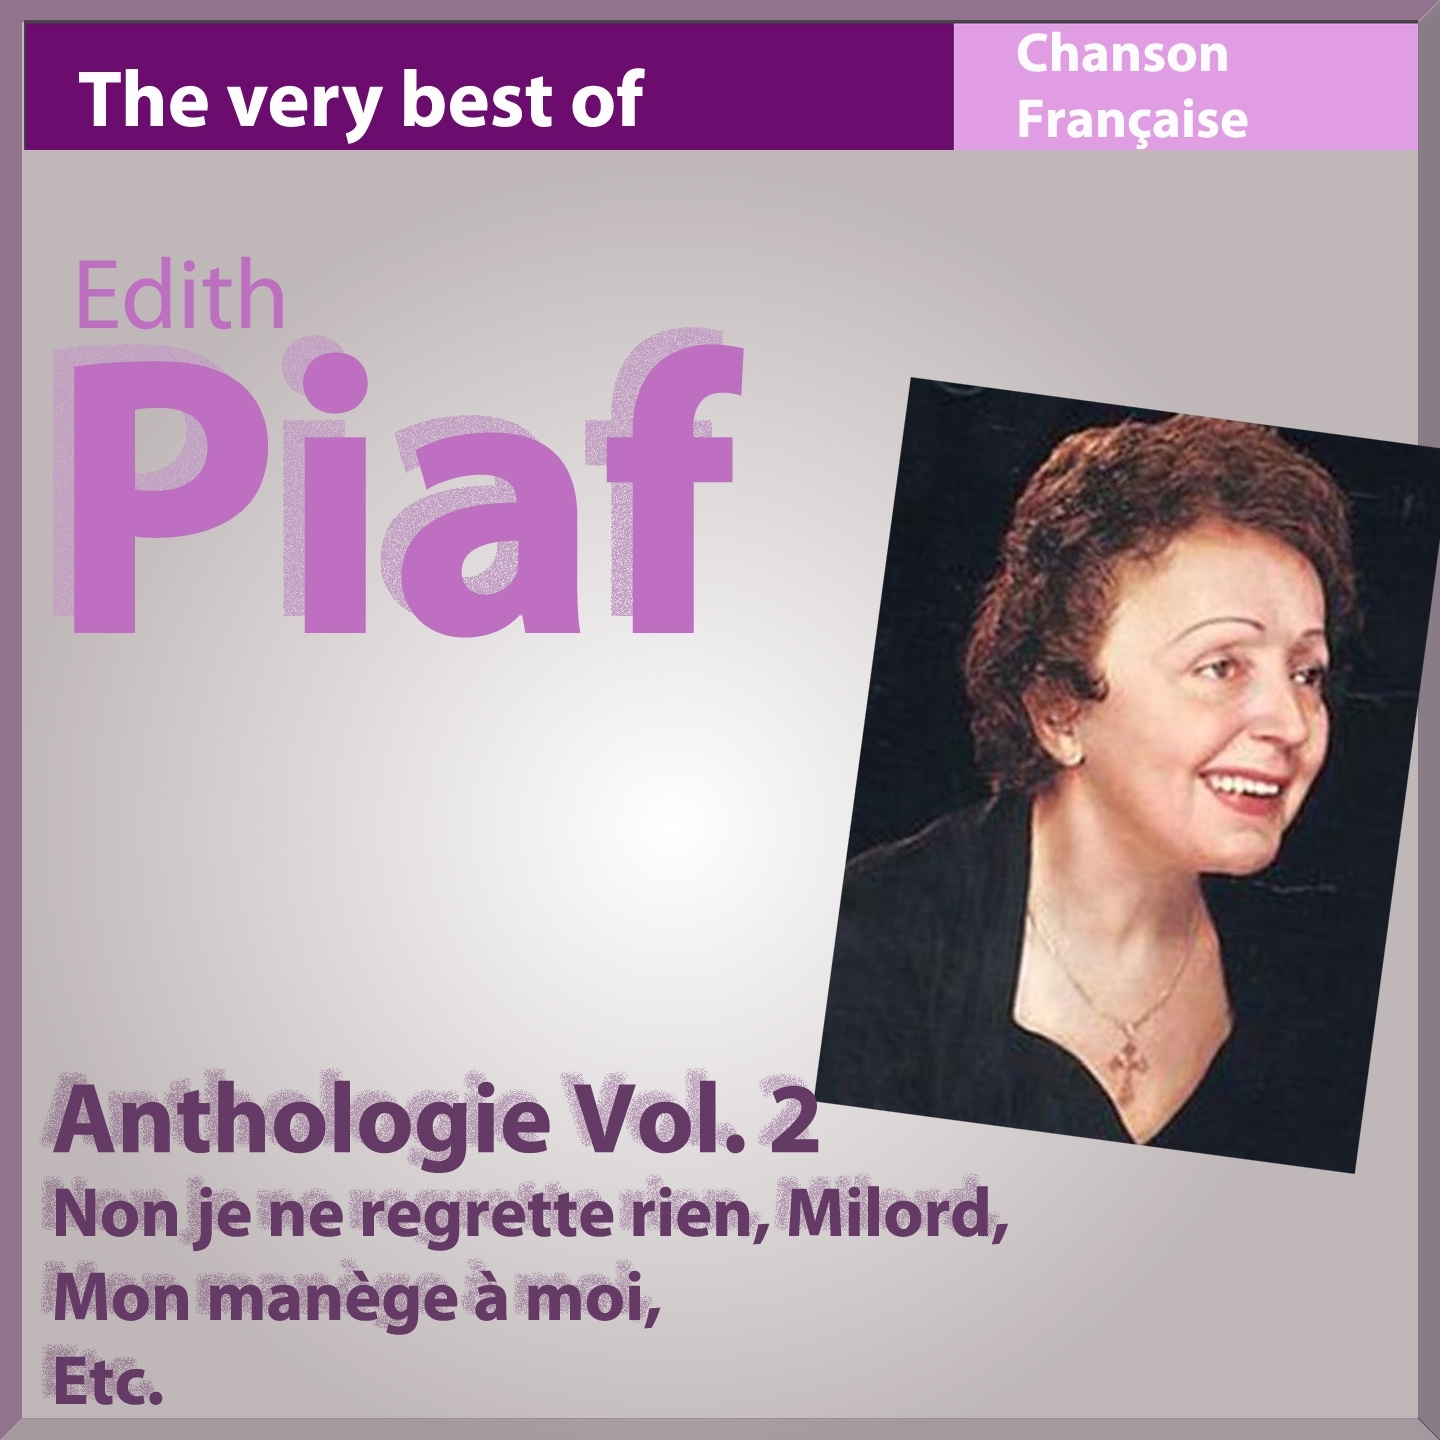 The Very Best of Edith Piaf: Non je ne regrette rien